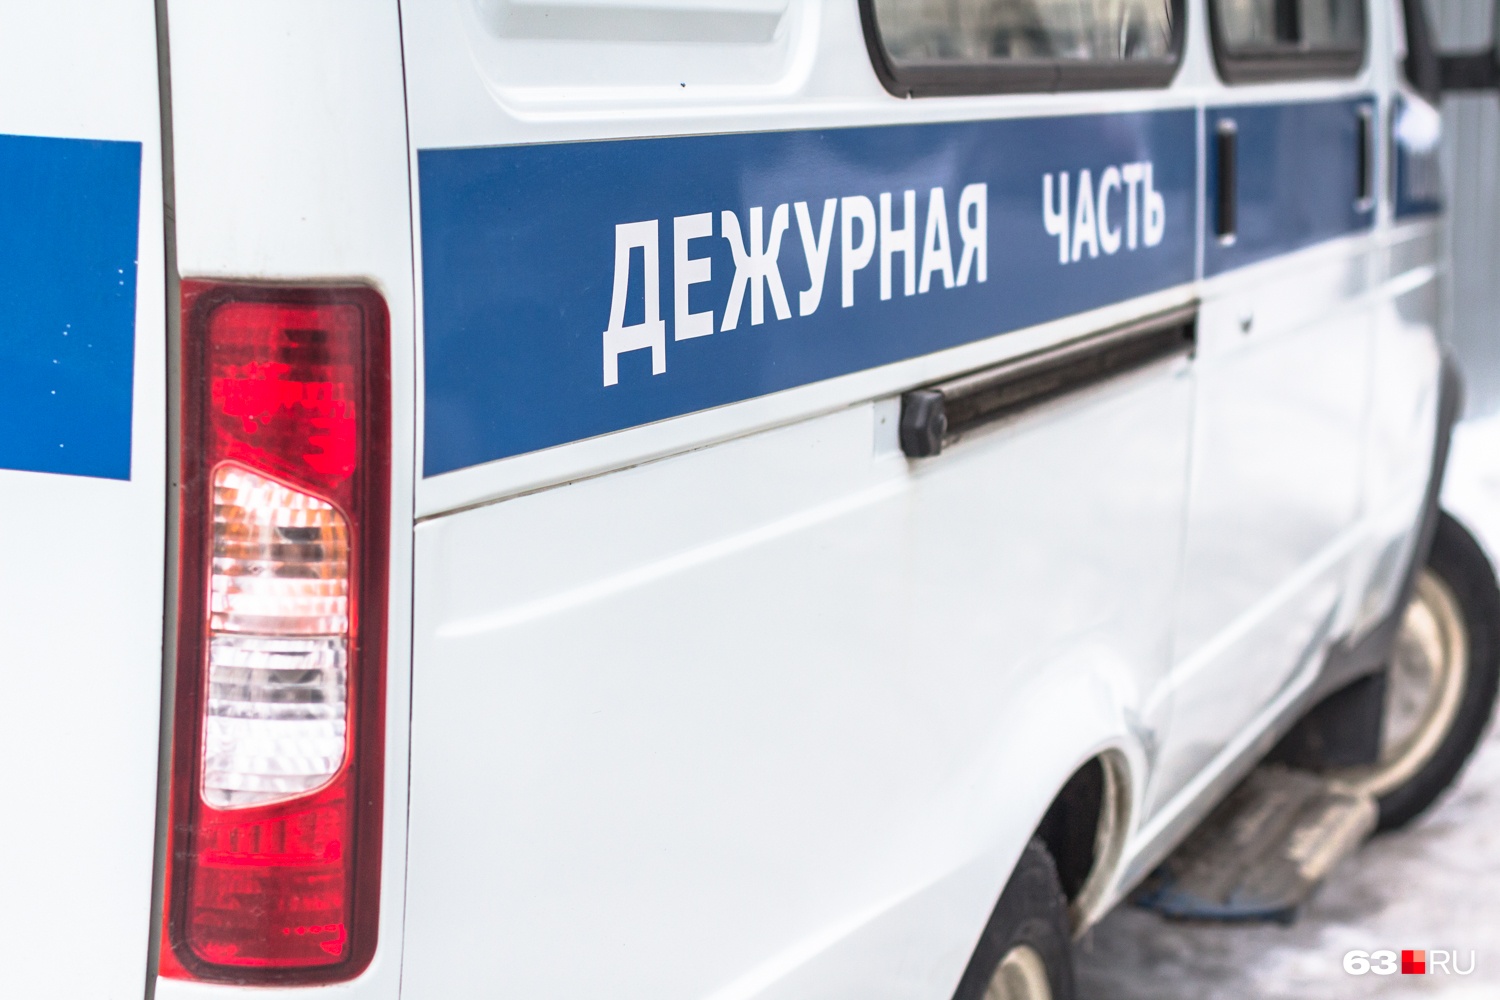 52 палки колбасы: в Тольятти поймали магазинного воришку